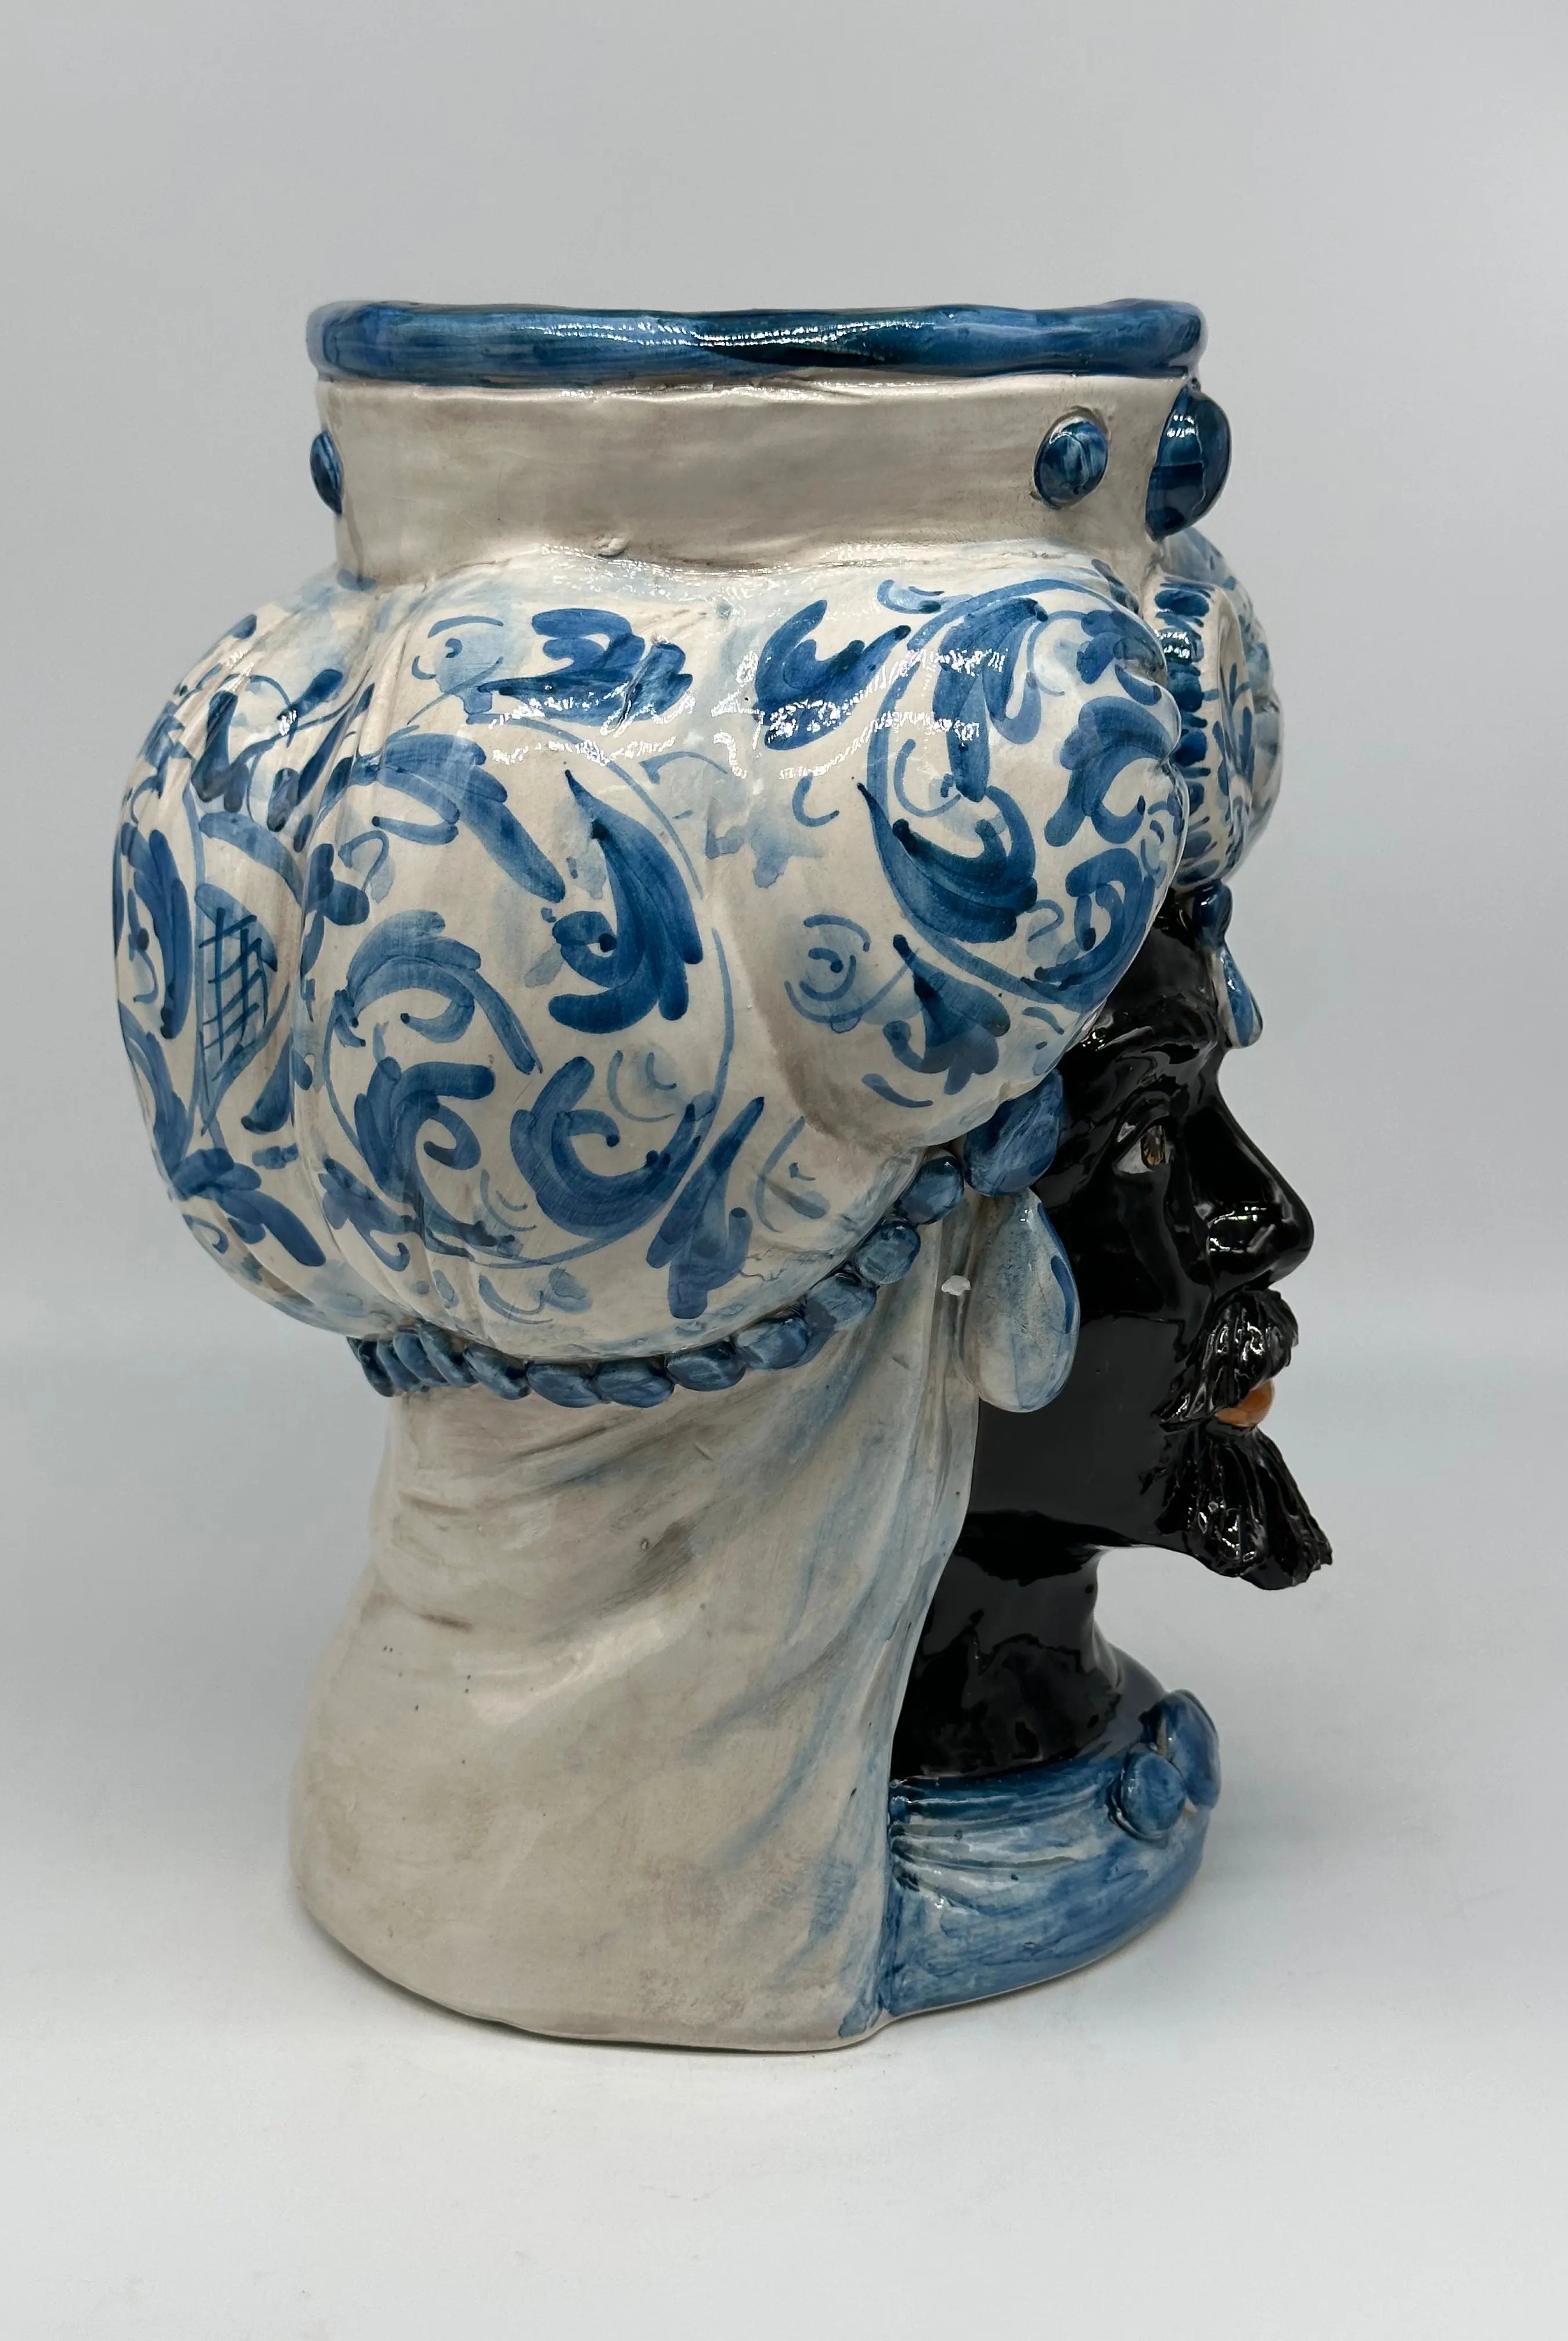 Teste di Moro Persia Ceramica Caltagirone cm H.30 L.22 Artigianale Decorazione Barocco Blu DD CERAMICHE SICILIANE